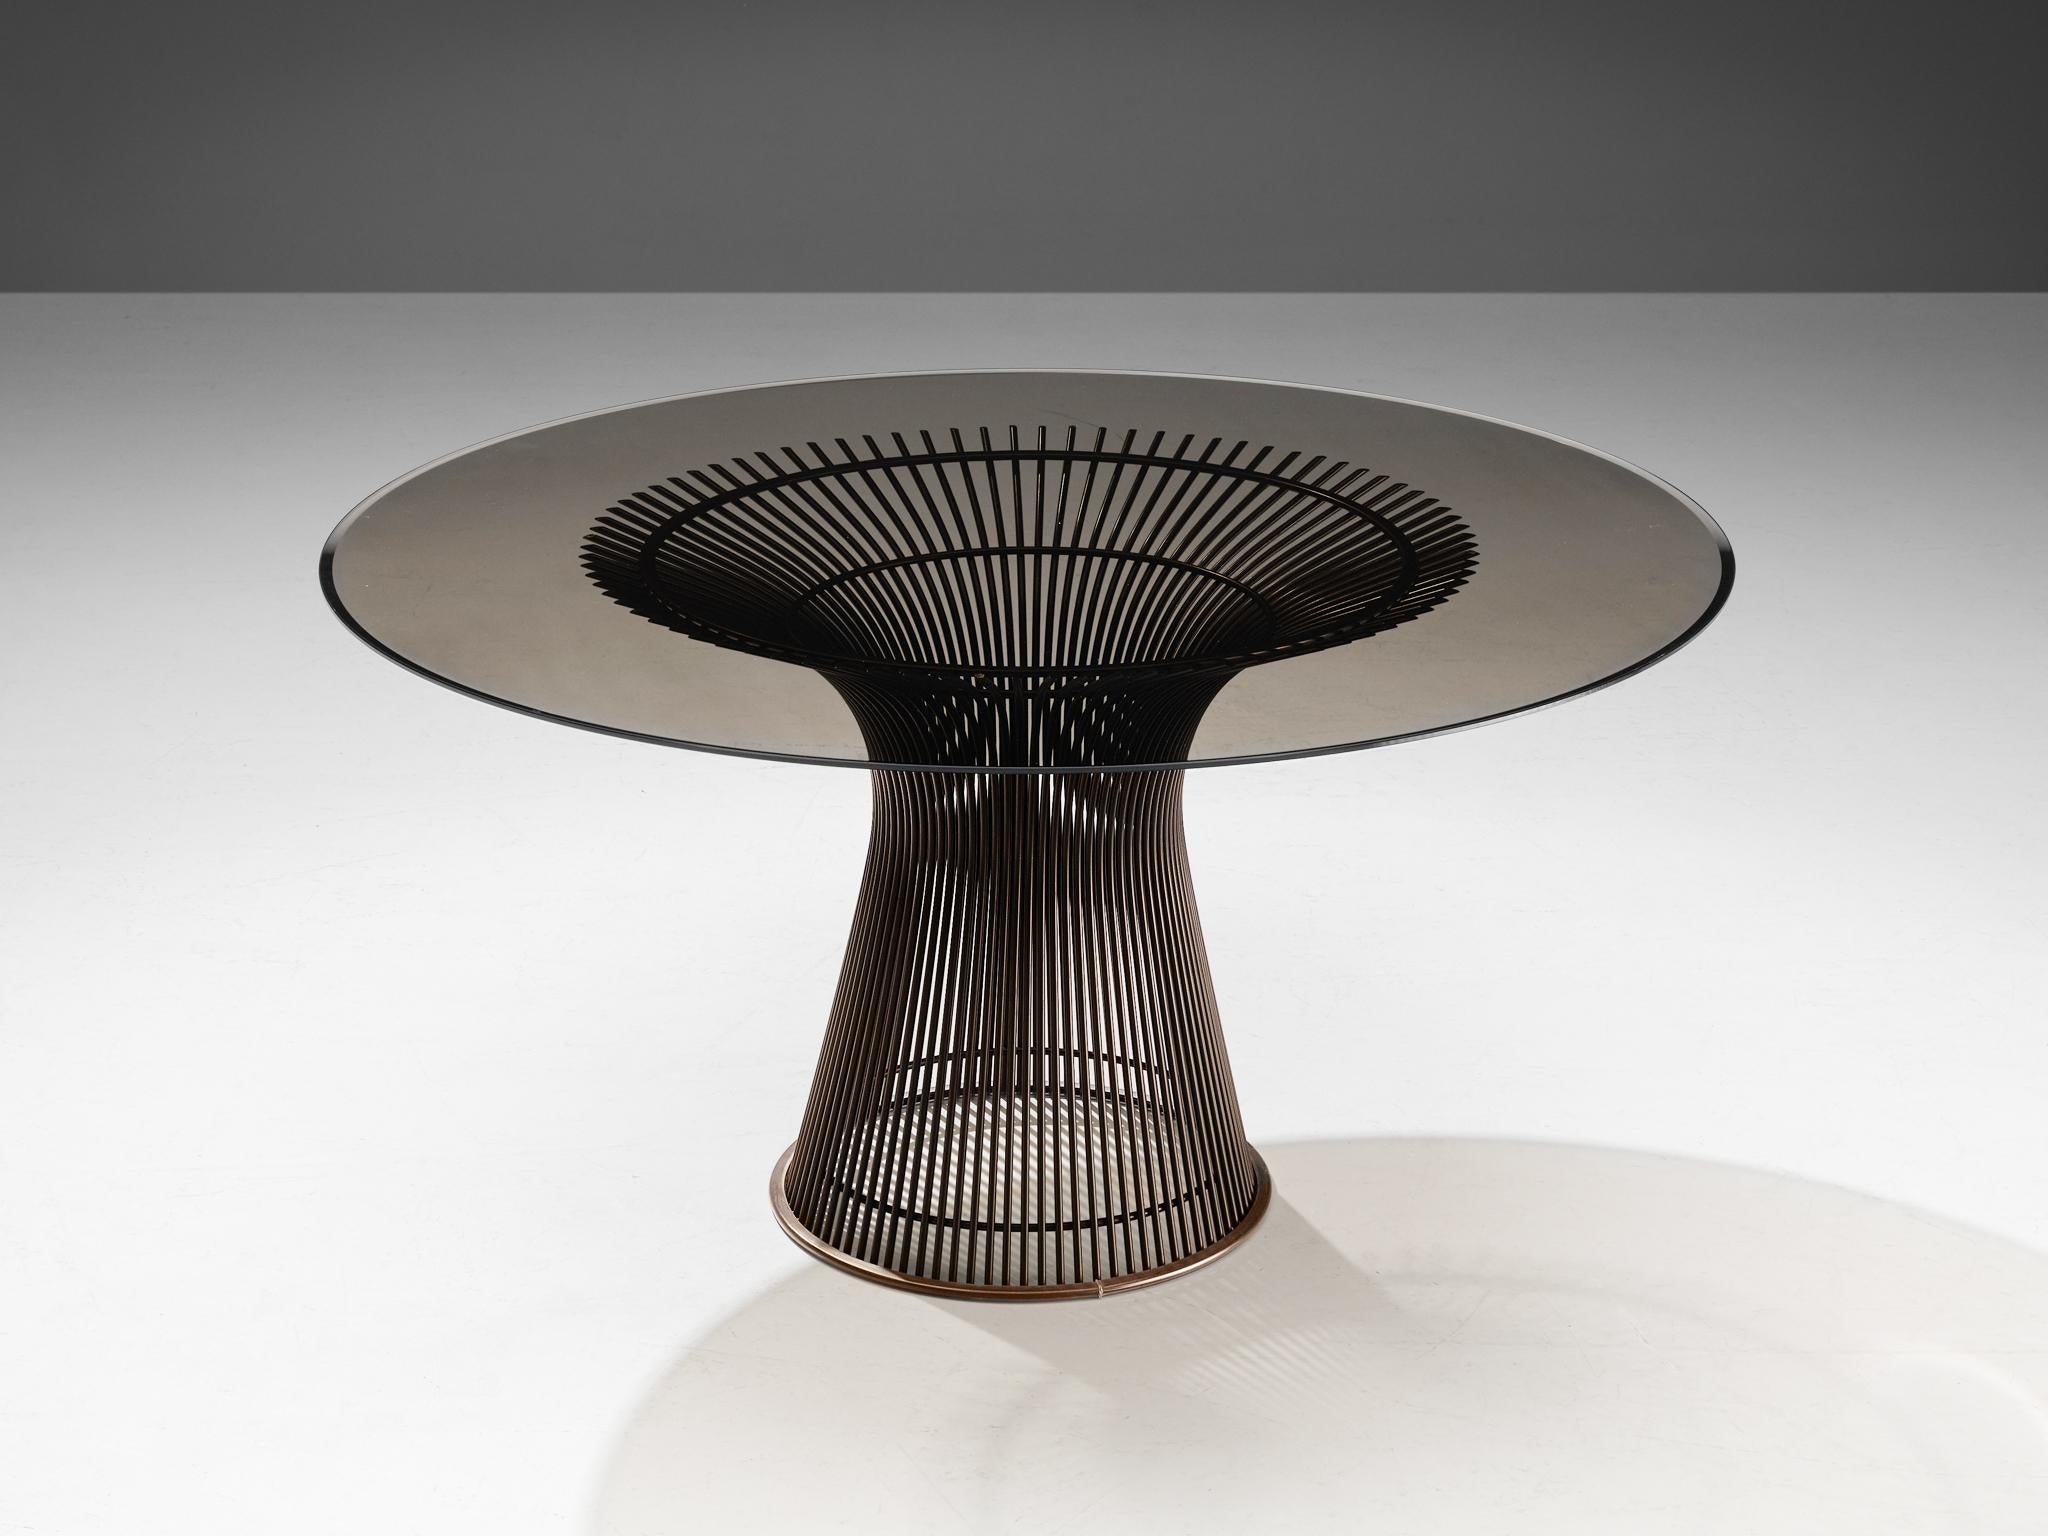 Warren Platner for Knoll, table, verre, acier, États-Unis, design ca. 1962  

Cette table centrale emblématique de Warren Steele (1919-2006) est créée en soudant des tiges d'acier incurvées à des cadres circulaires et semi-circulaires, servant à la